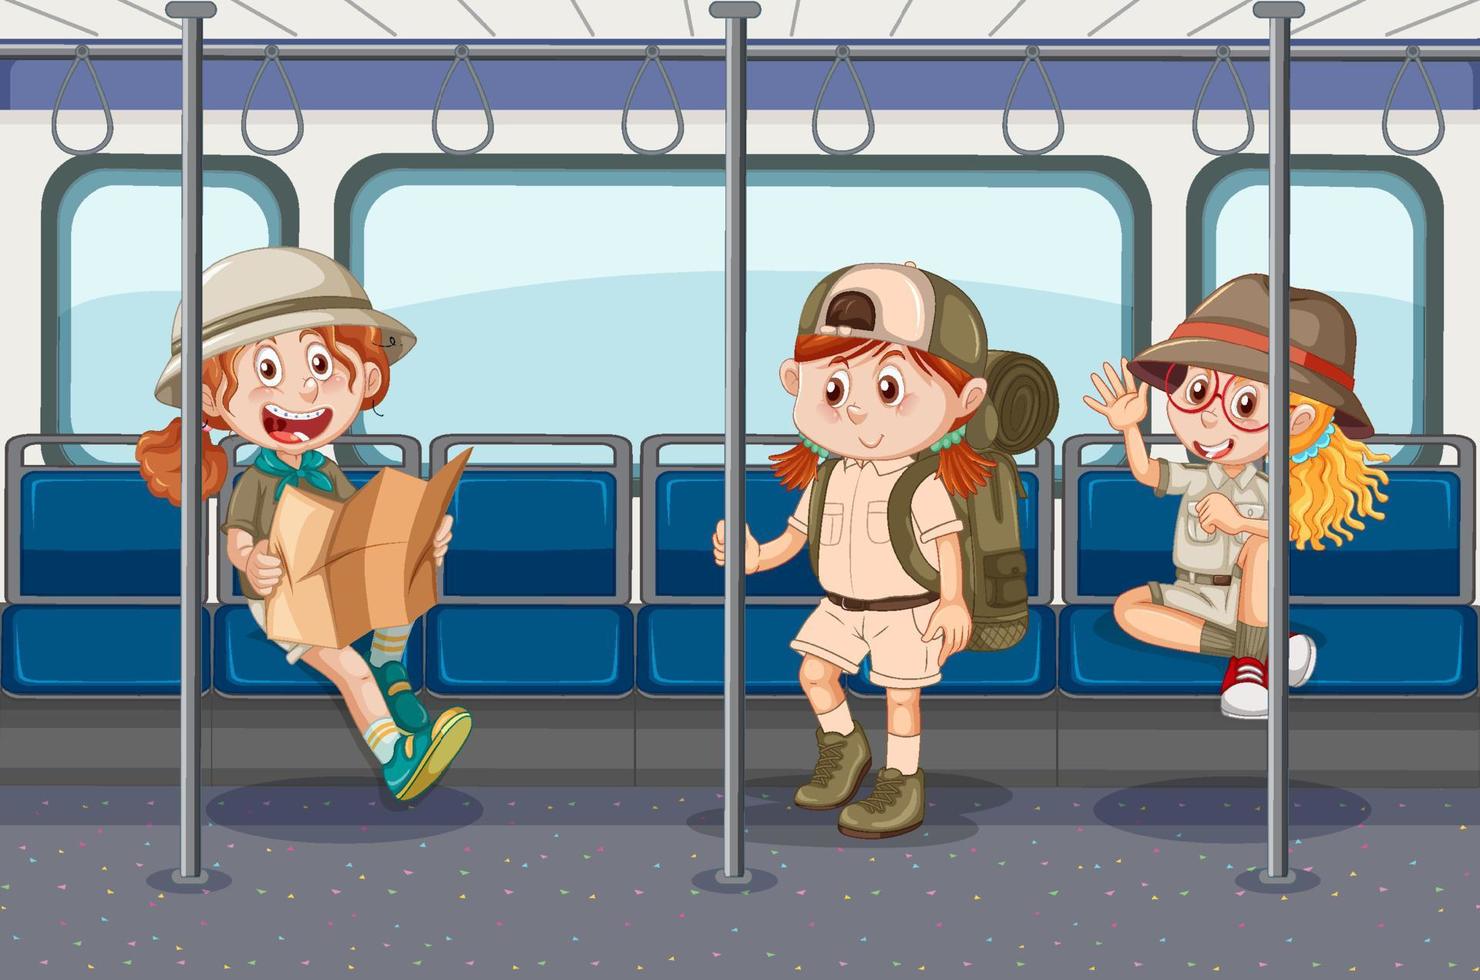 autobús interior con dibujos animados de personas vector